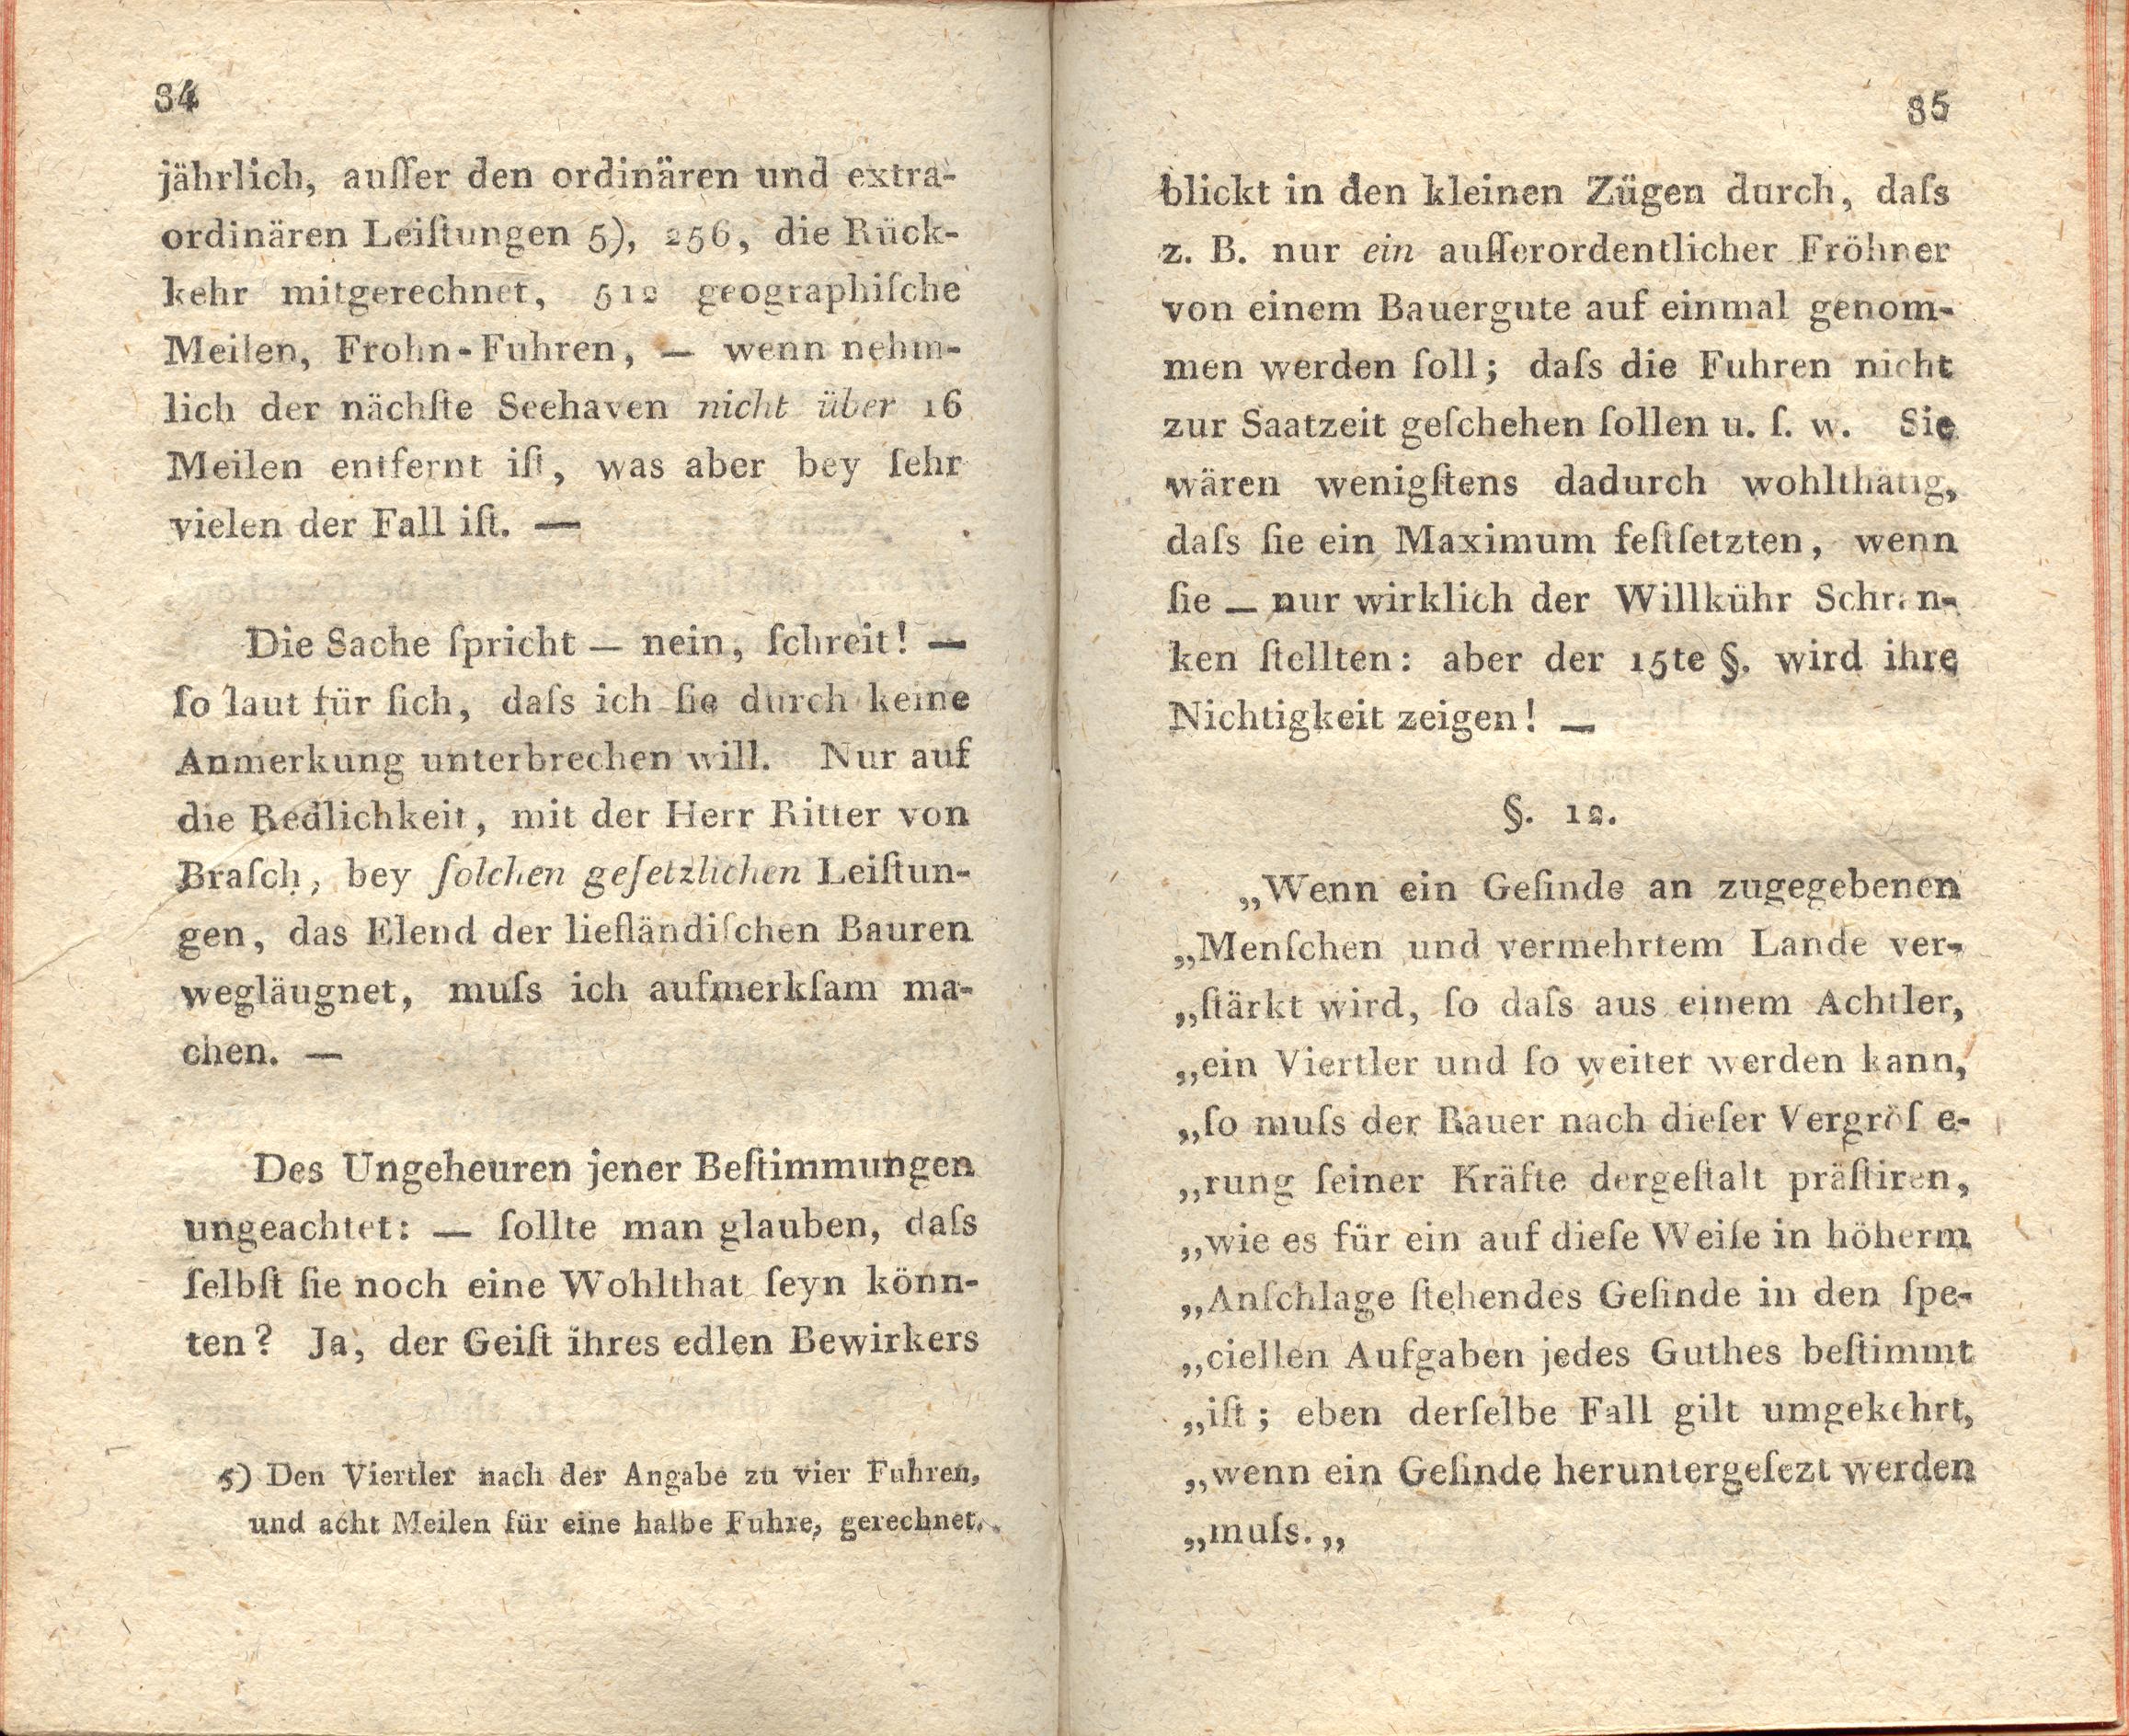 Supplement zu den Letten (1798) | 43. (84-85) Main body of text